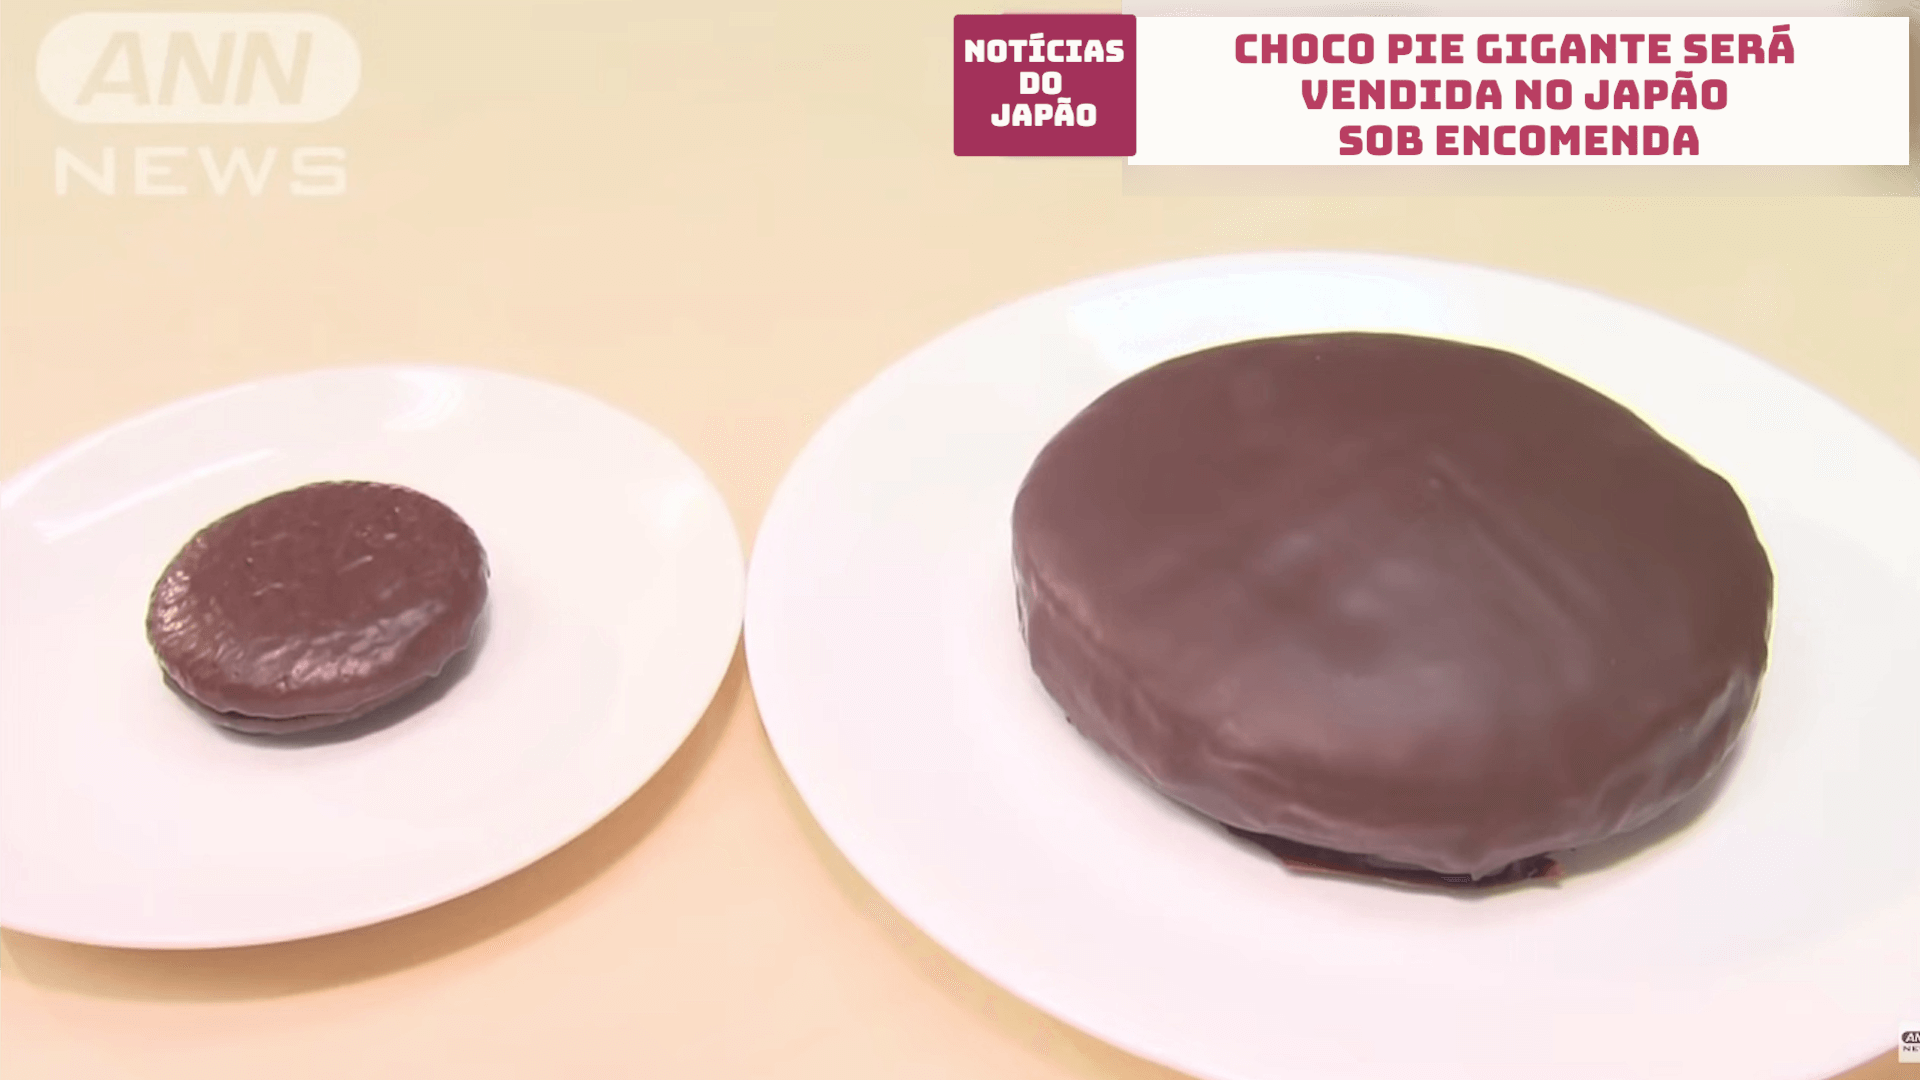 Choco Pie gigante será vendida no Japão sob encomenda